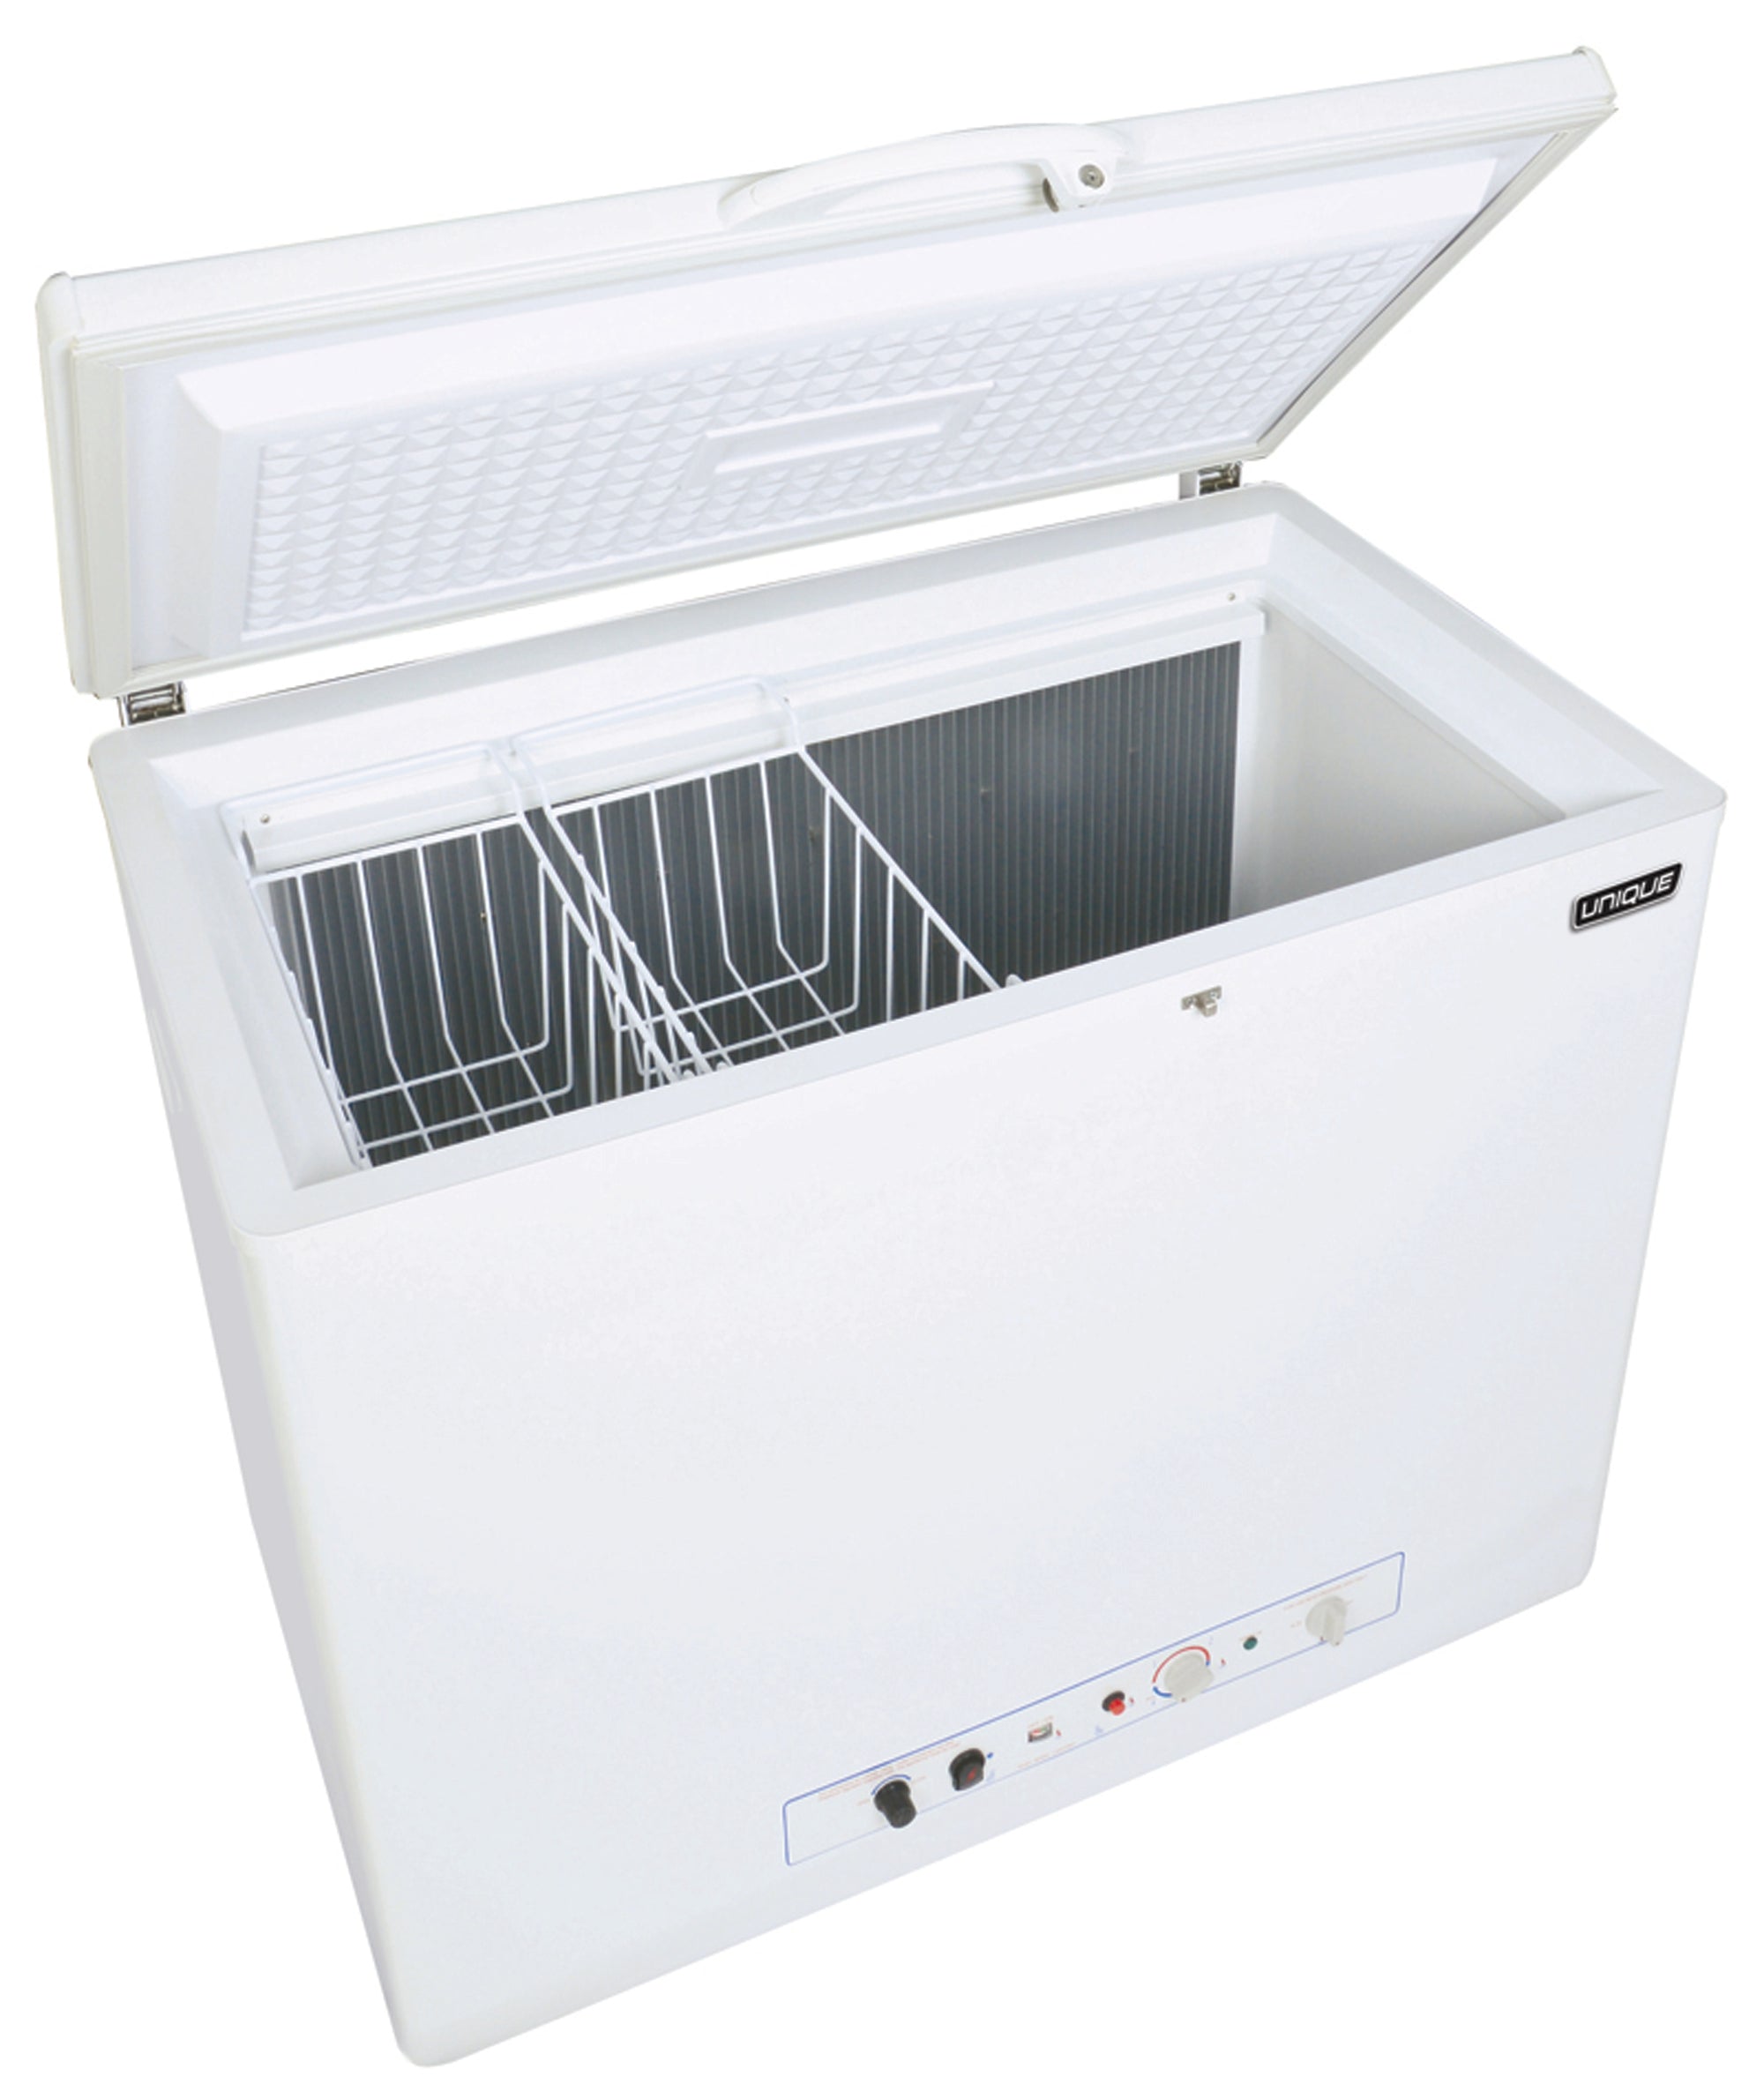 Unique Appliances - 6 cu. Ft  Chest Freezer in White - UGP-6F CM W